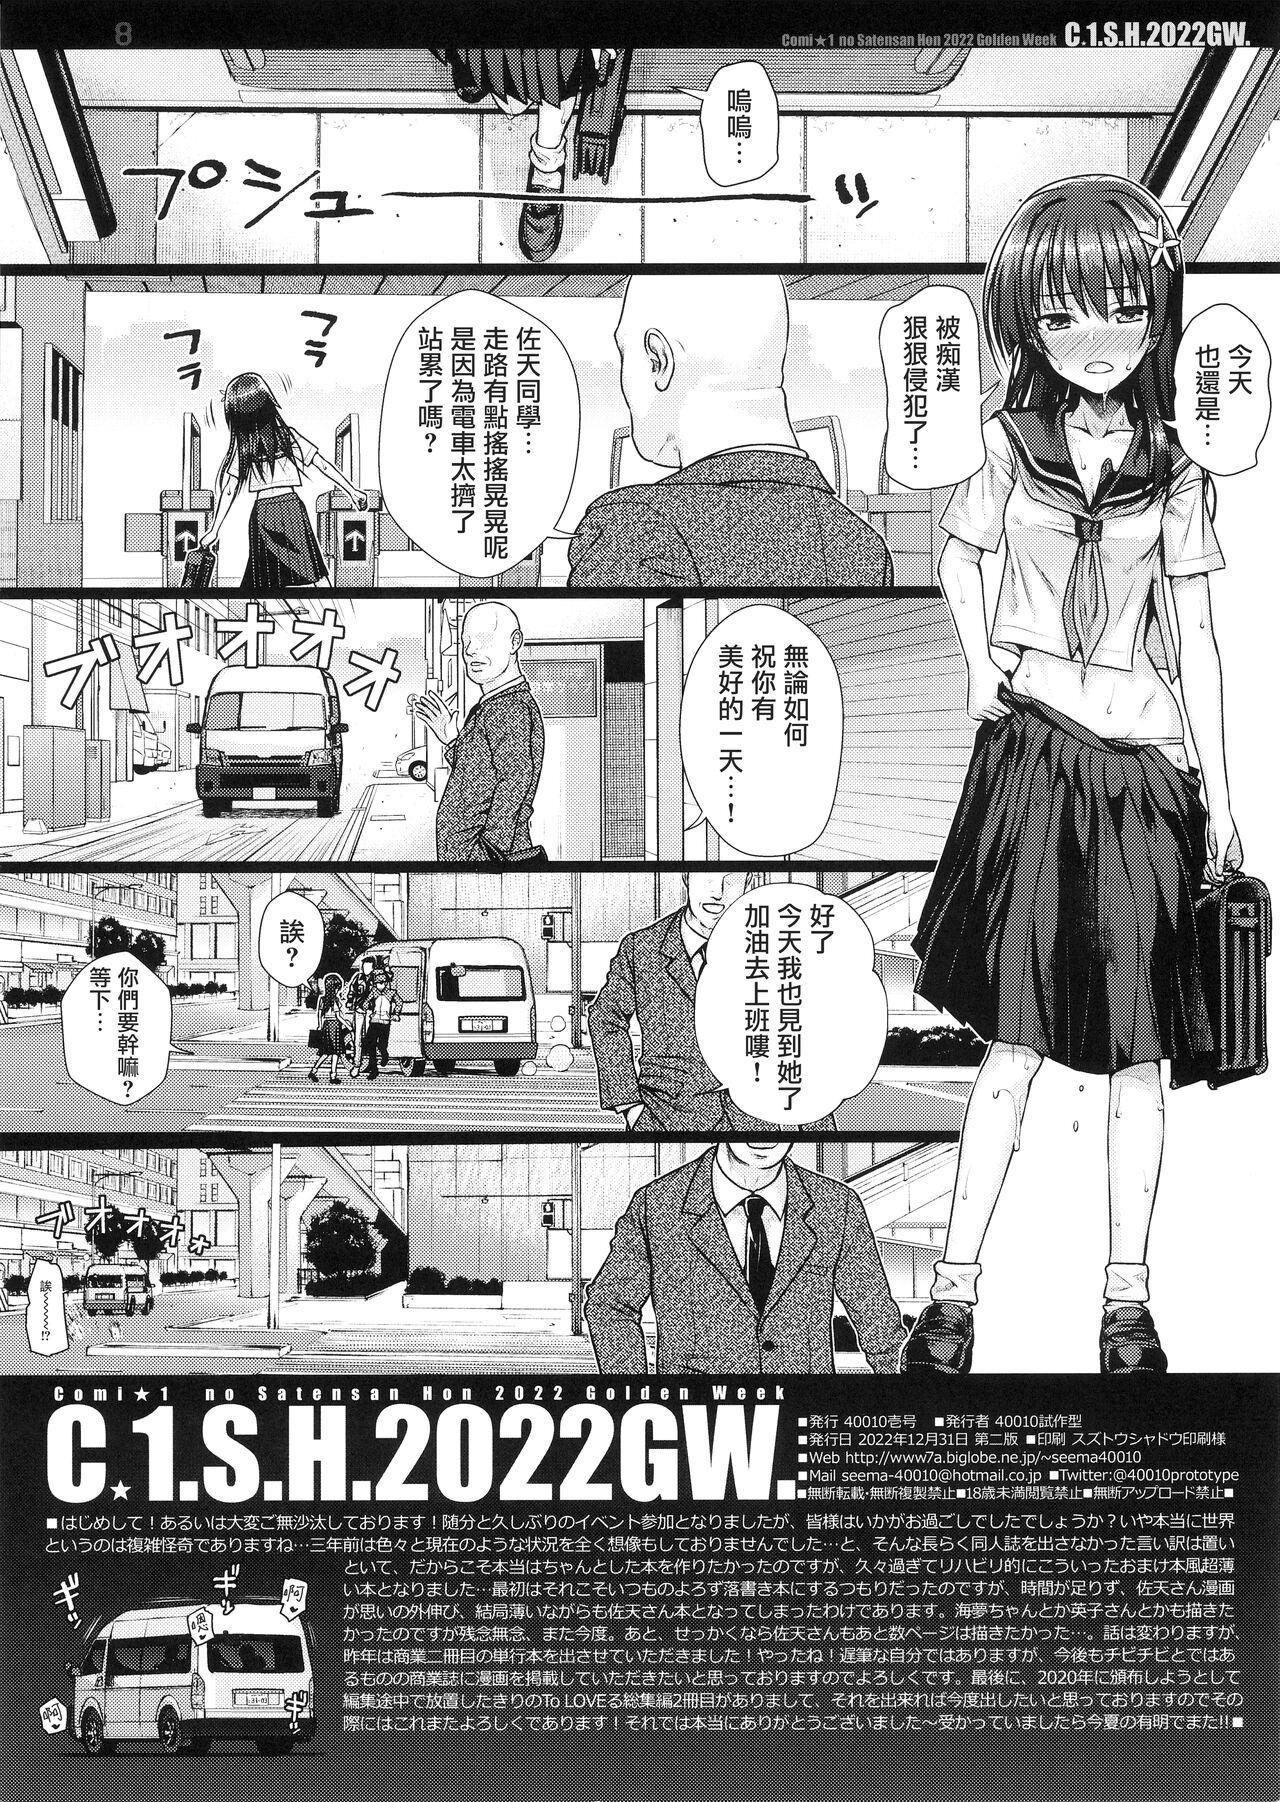 Grandpa C☆1.S.H.2022GW. - Toaru project Fuck Porn - Page 9